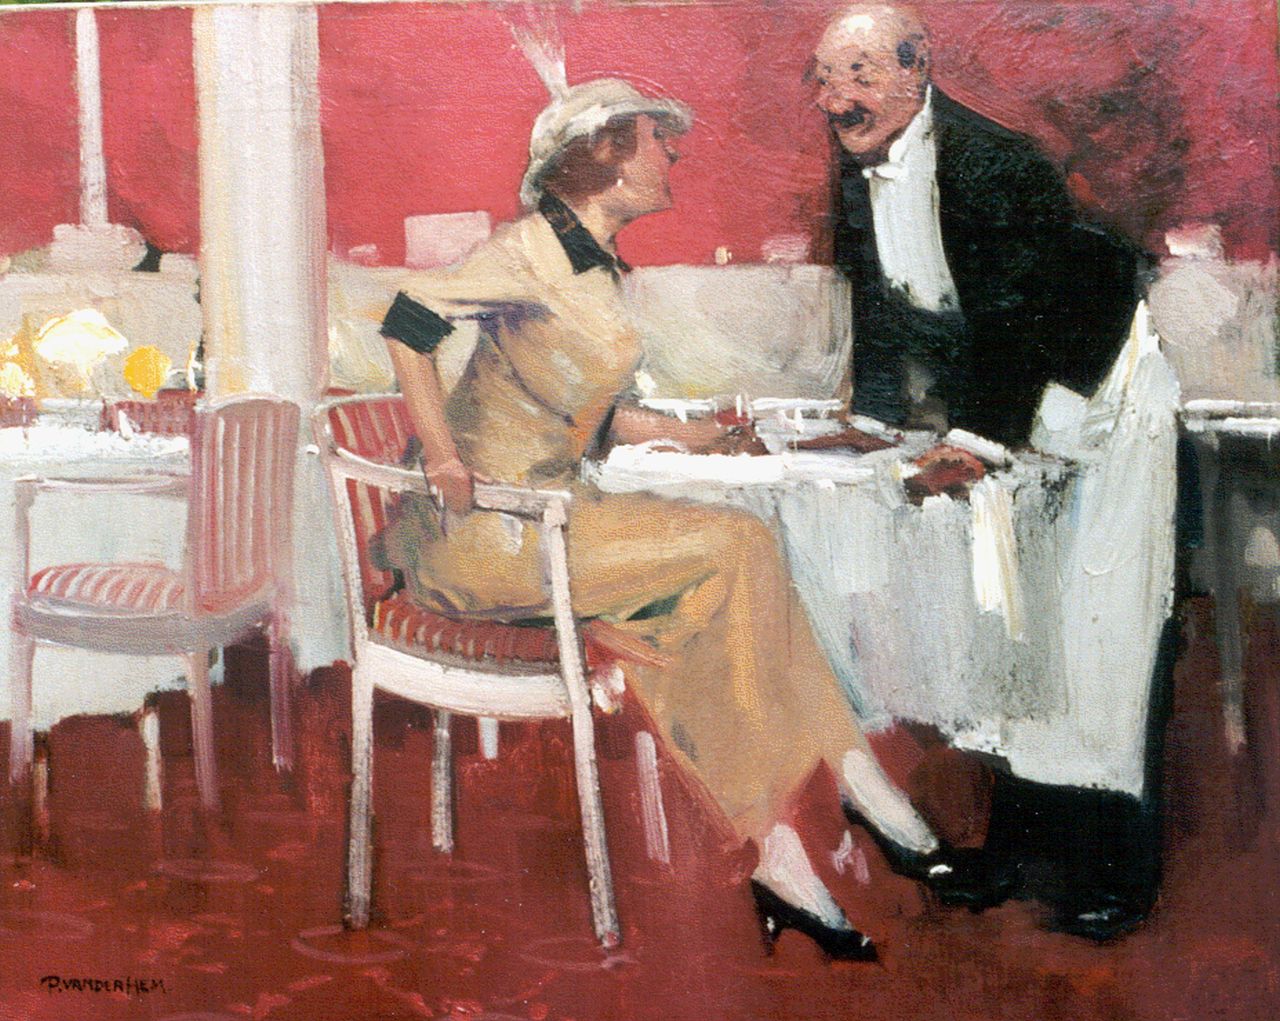 Hem P. van der | Pieter 'Piet' van der Hem, In het restaurant, olieverf op doek 47,3 x 58,6 cm, gesigneerd linksonder